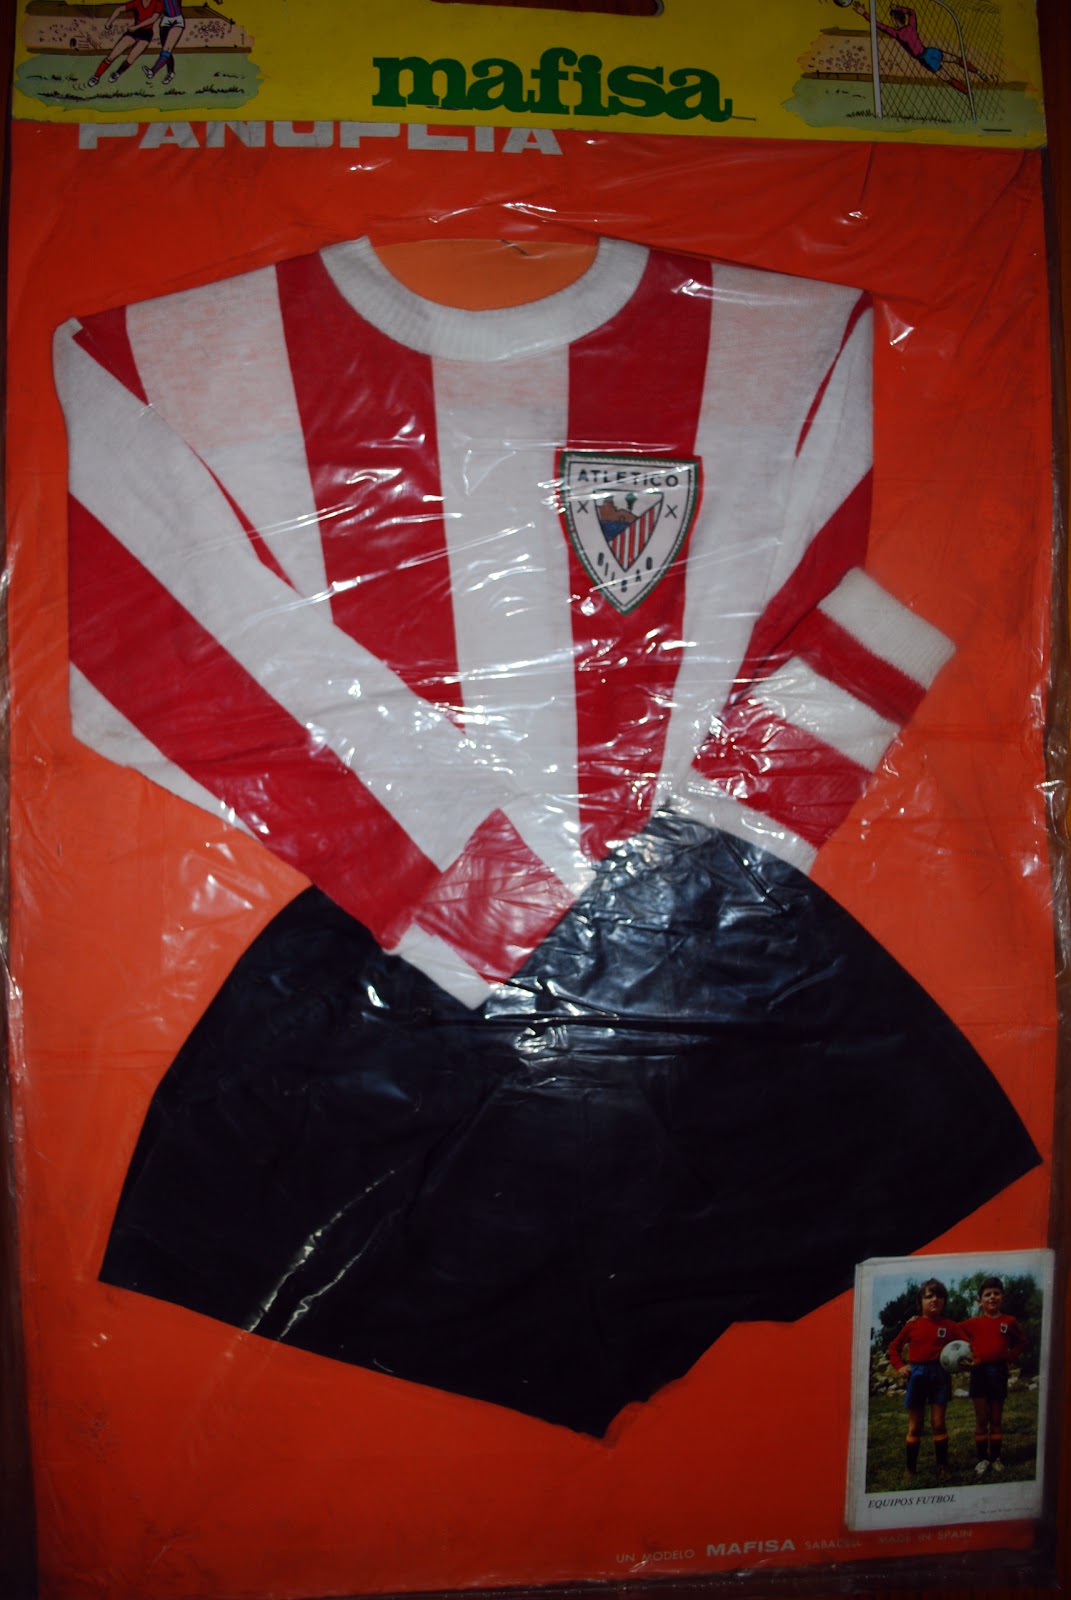 Mi Colección de Camisetas del Athletic Club Bilbao